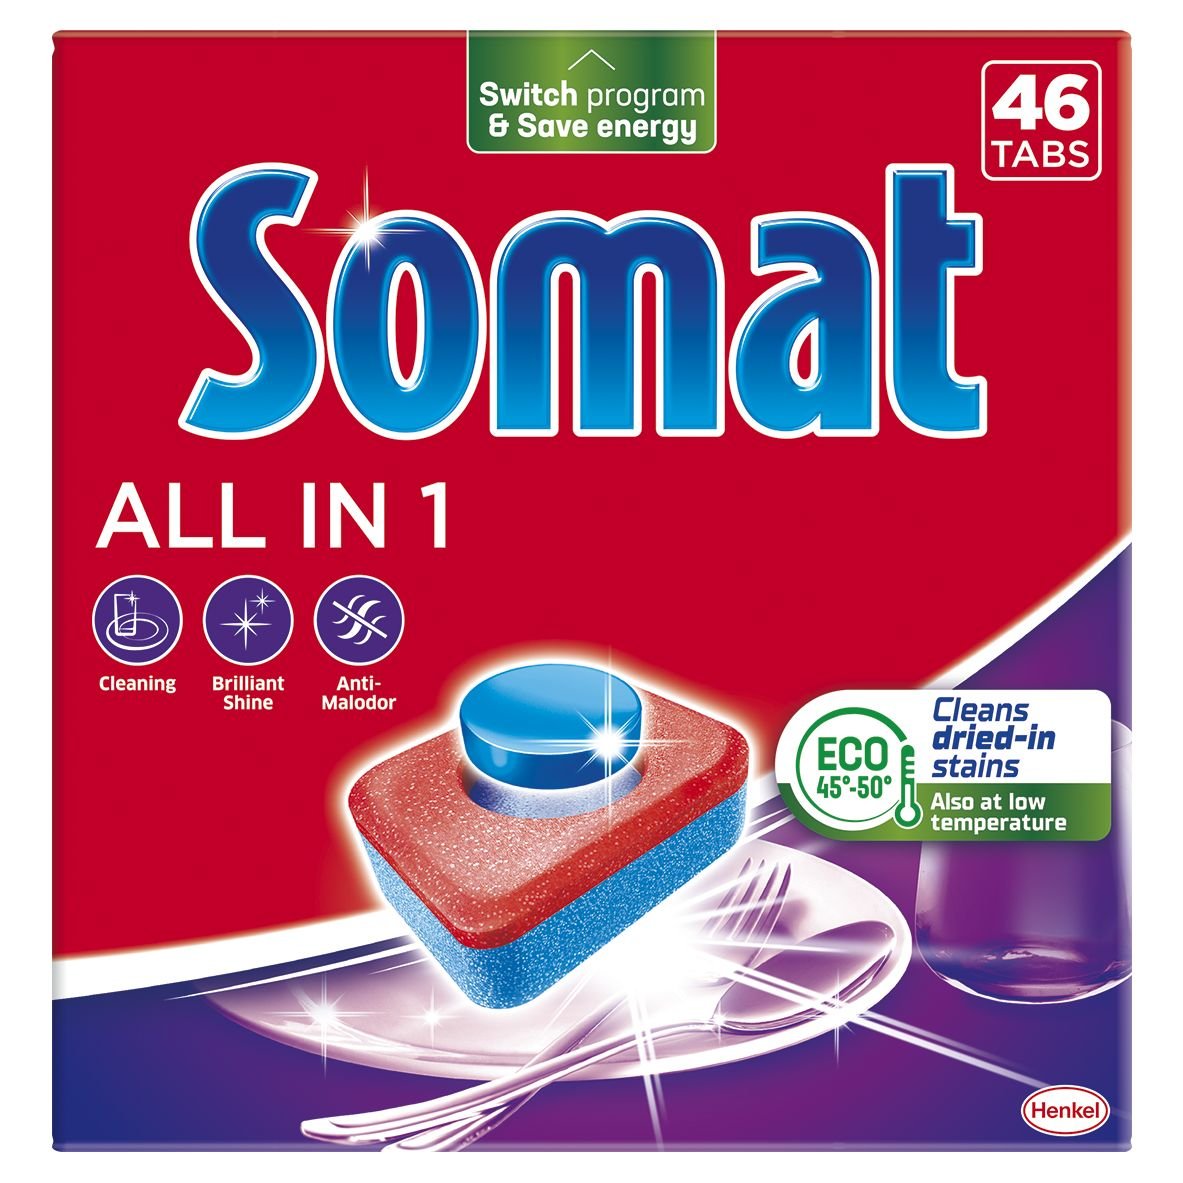 Таблетки для мытья посуды в посудомоечной машине Somat All in one, 46 таблеток - фото 1